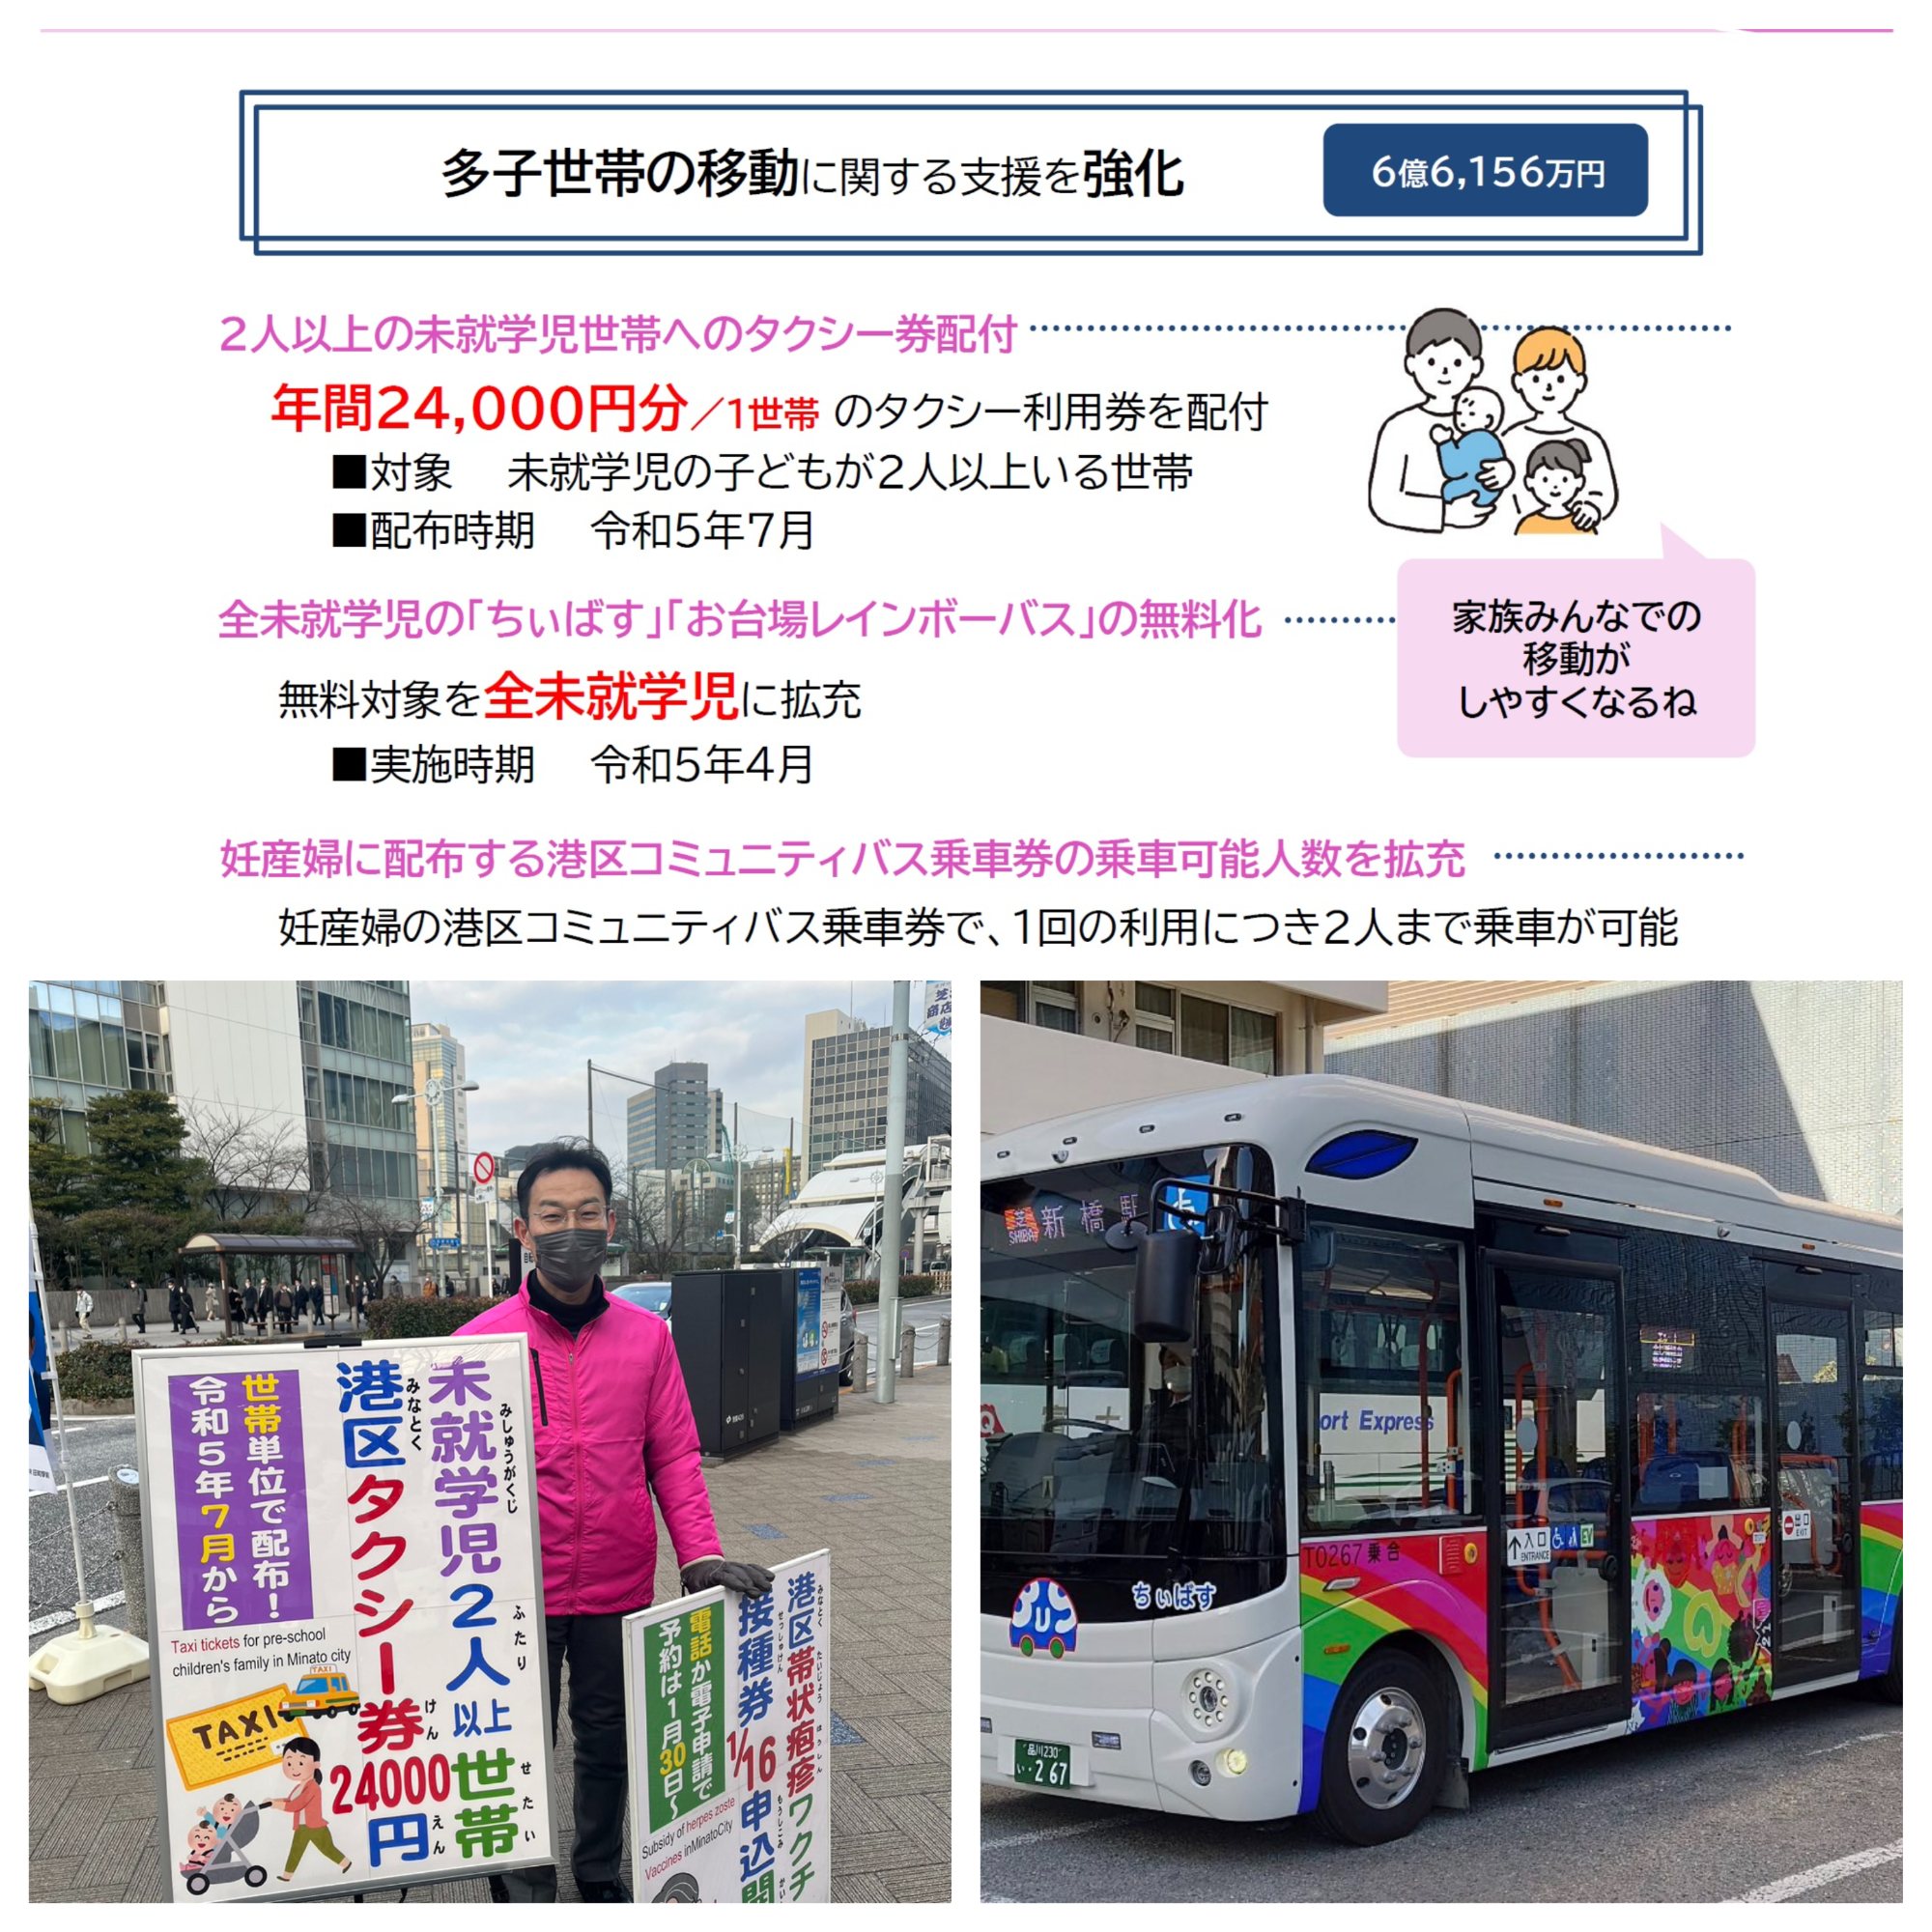 【2023年2月8日】未就学児2人以上家庭にタクシー券24000円を情報提供